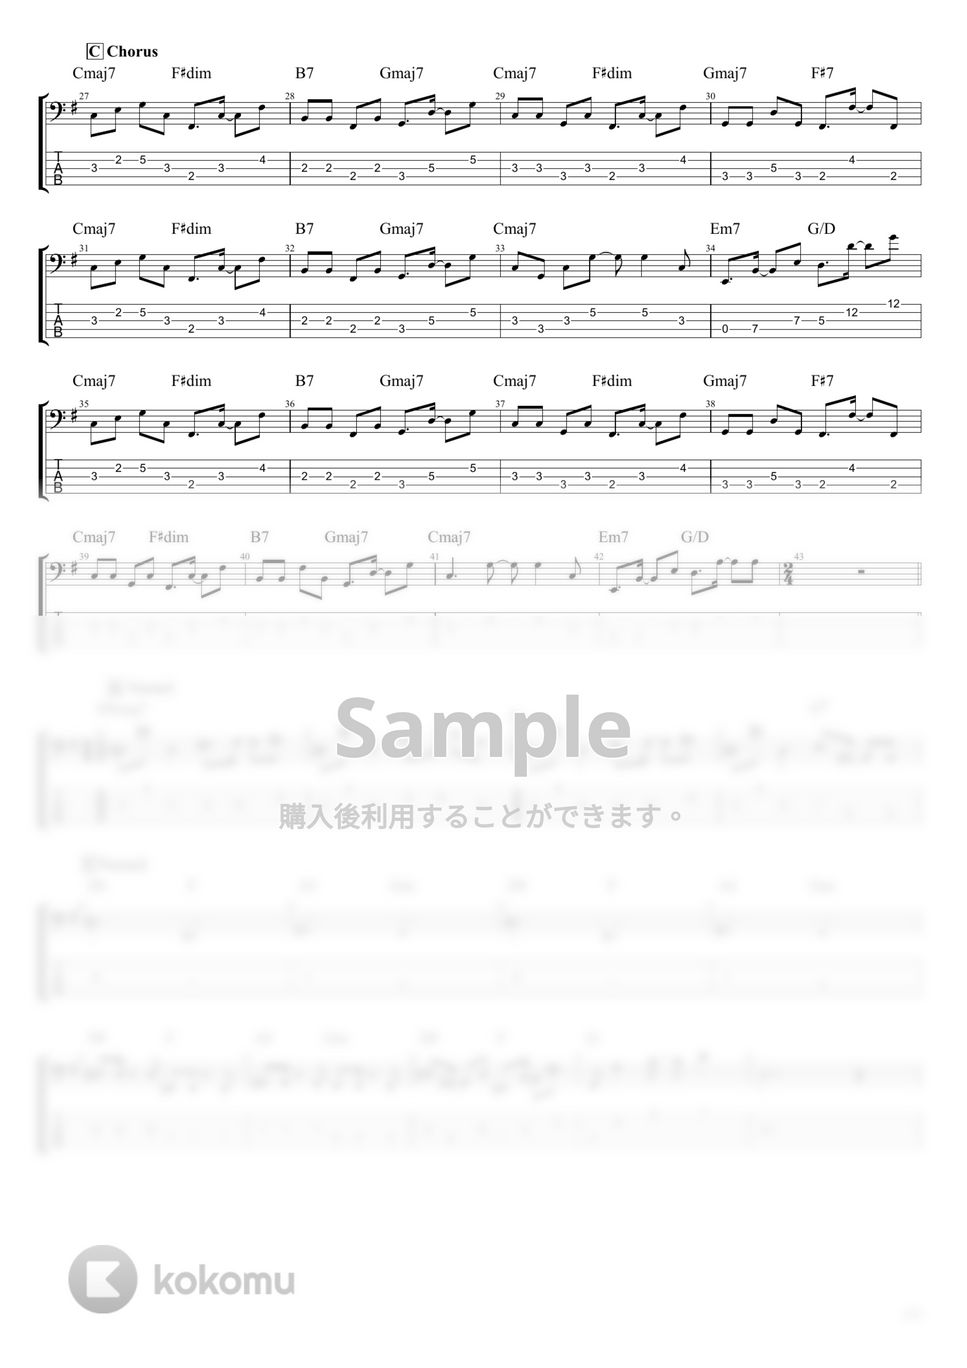 ジェニーハイ - モンスター feat.yama (ベース Tab譜 5弦) by T's bass score